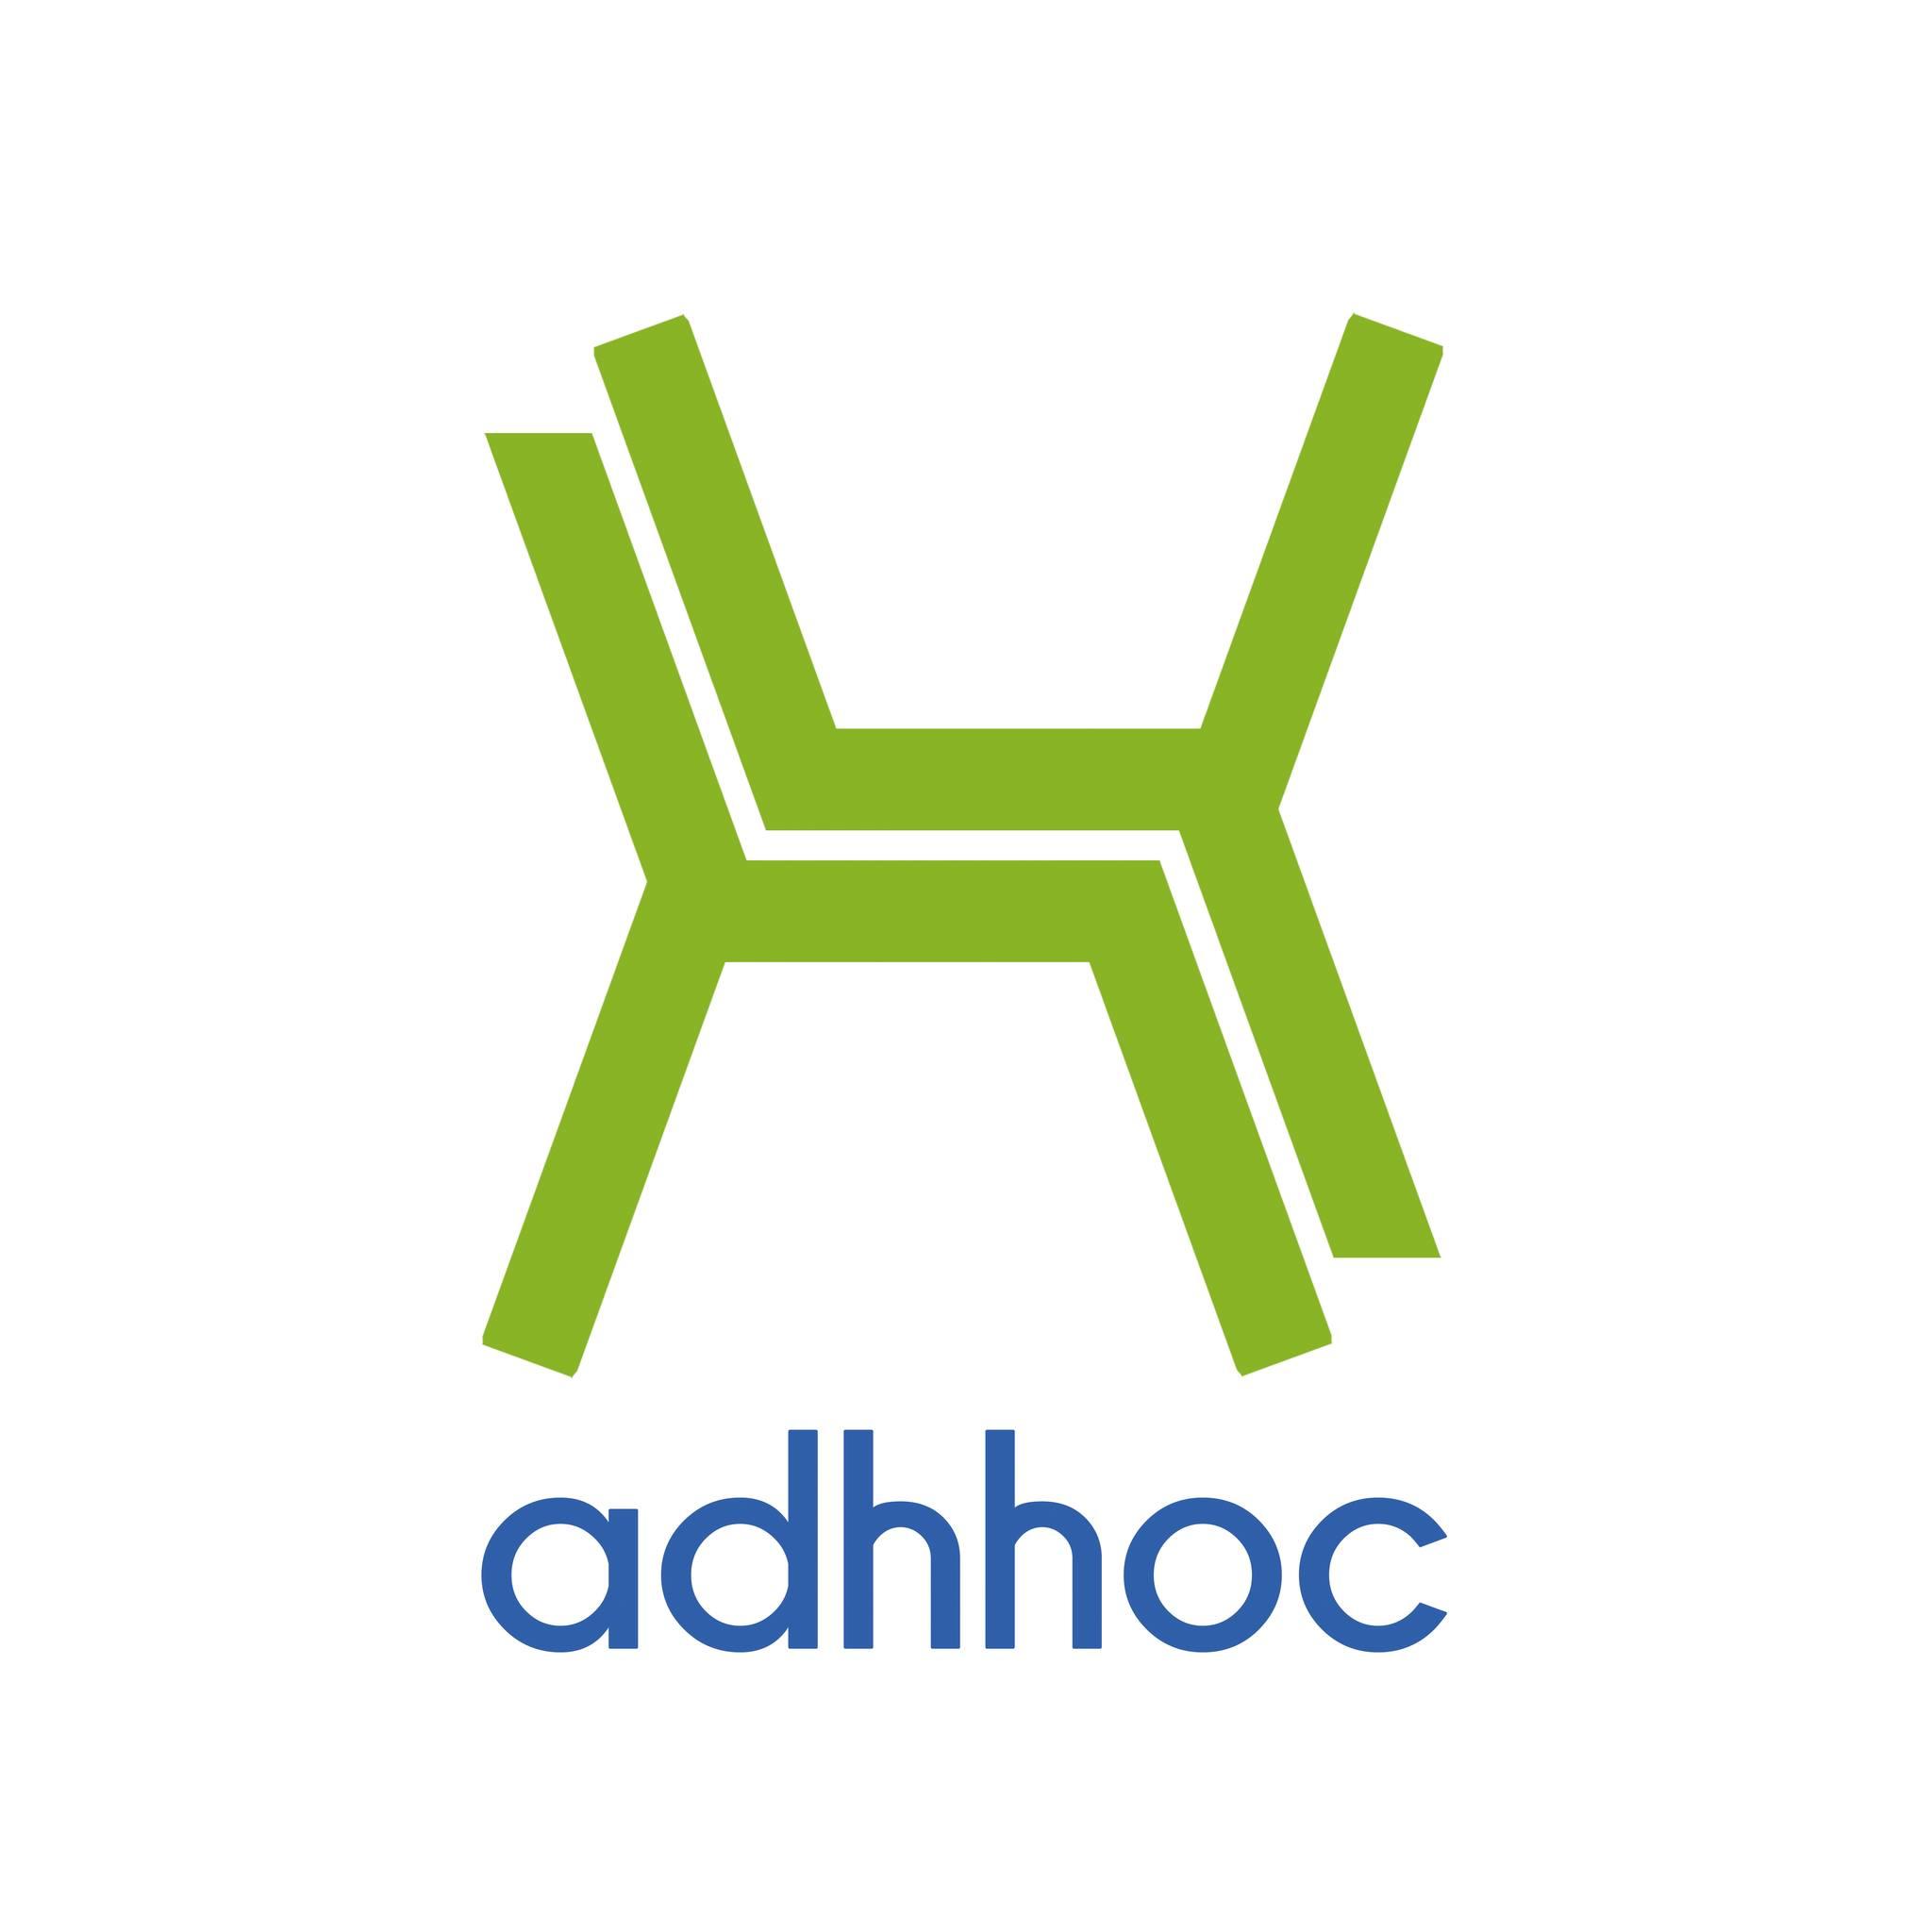 Adhhoc Design Hotel by Mounge Logo